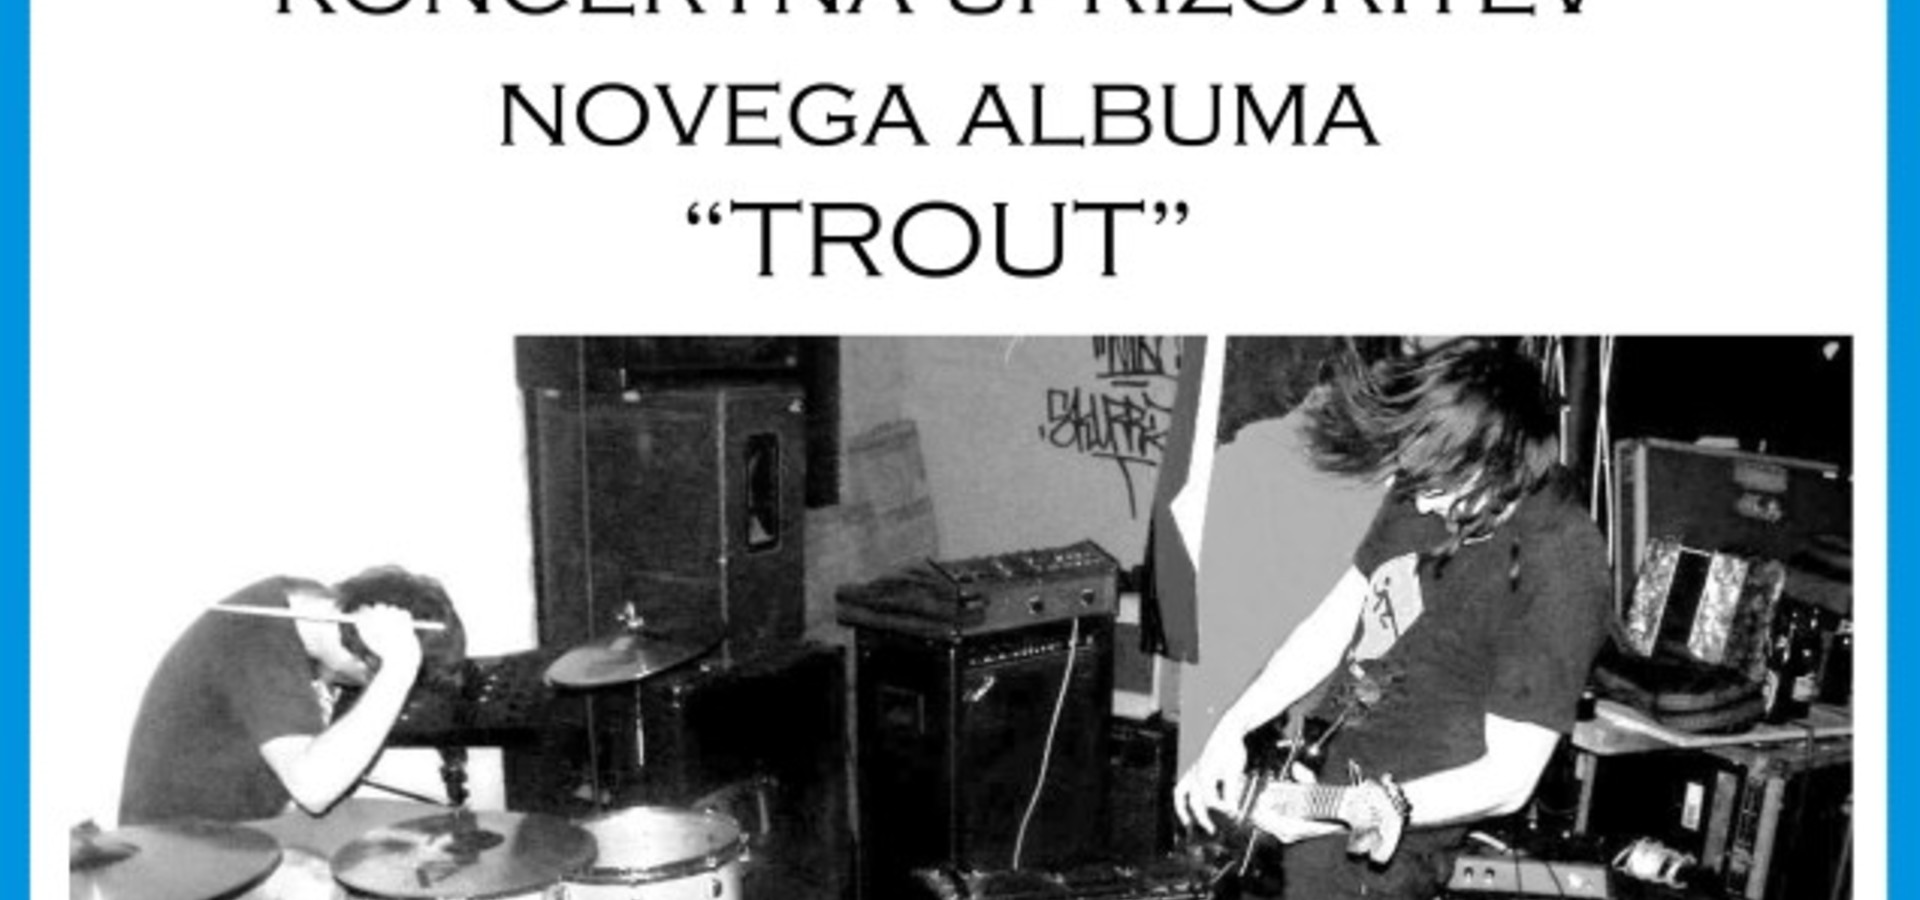 Nikki Louder: Premierna koncertna predstavitev plošče Trout